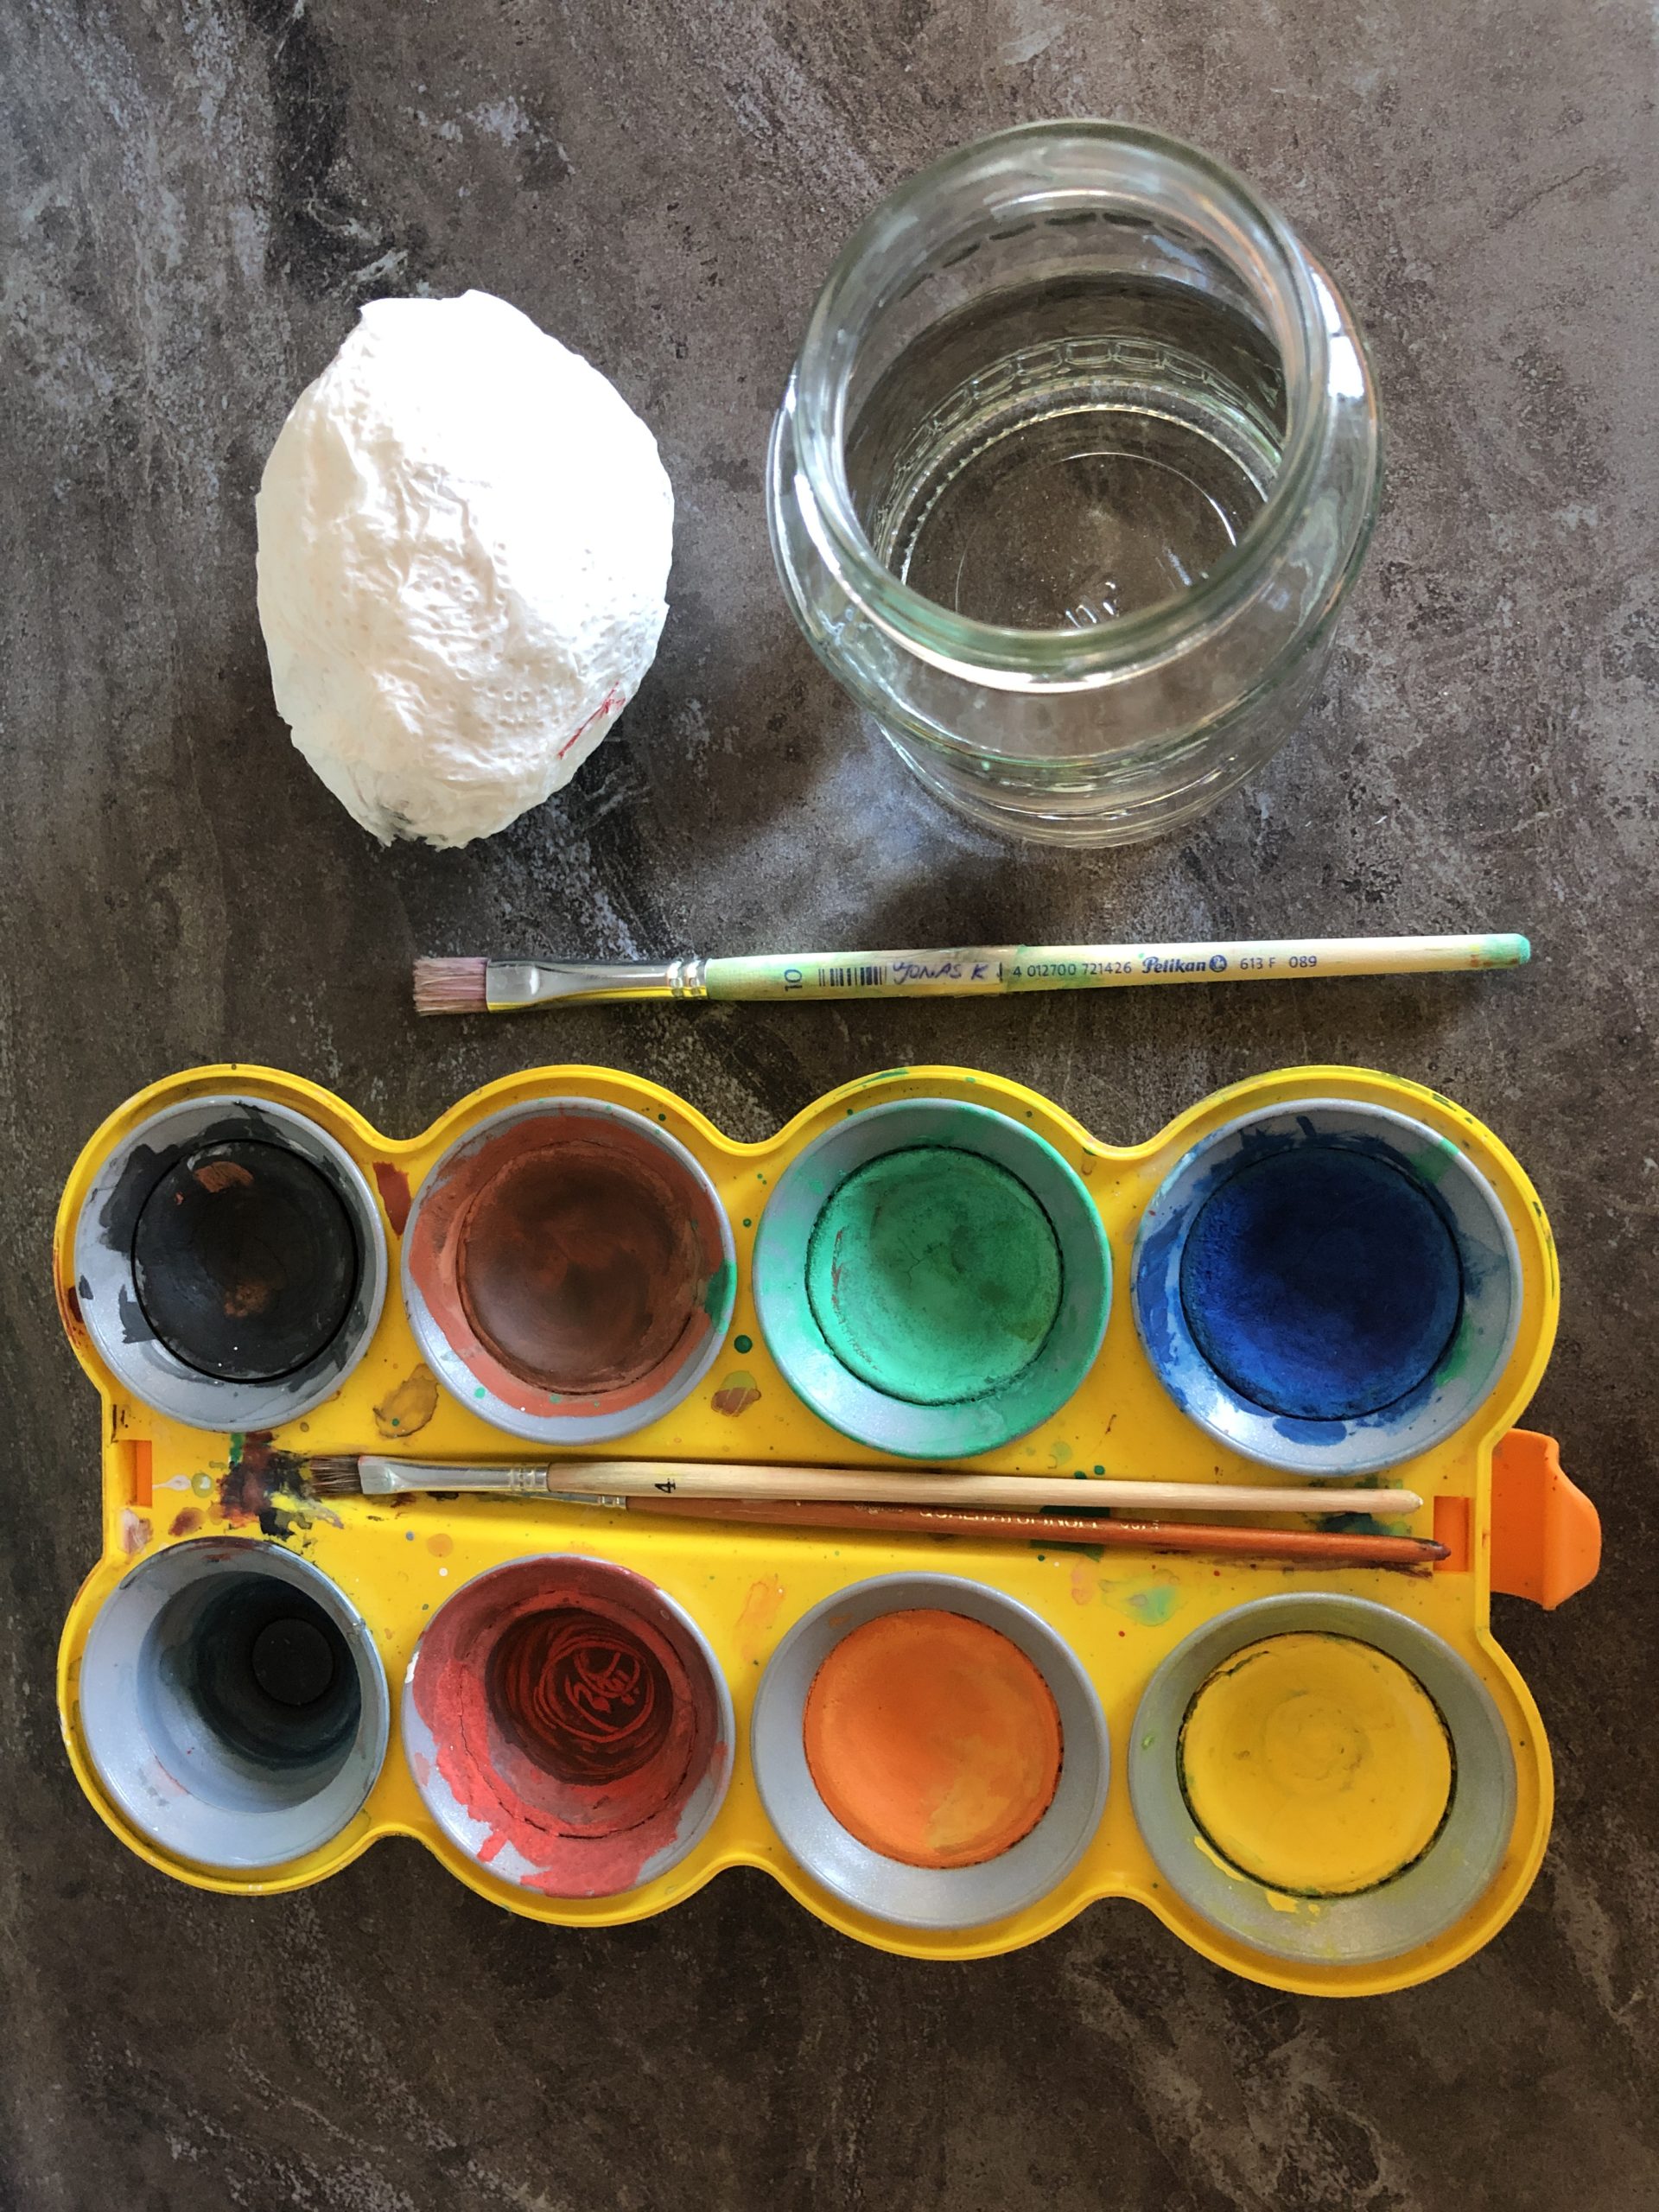 Bild zum Schritt 2 für das Bastel- und DIY-Abenteuer für Kinder: 'Wasserfarben, Pinsel und Glas mit Wasser bereitstellen.'